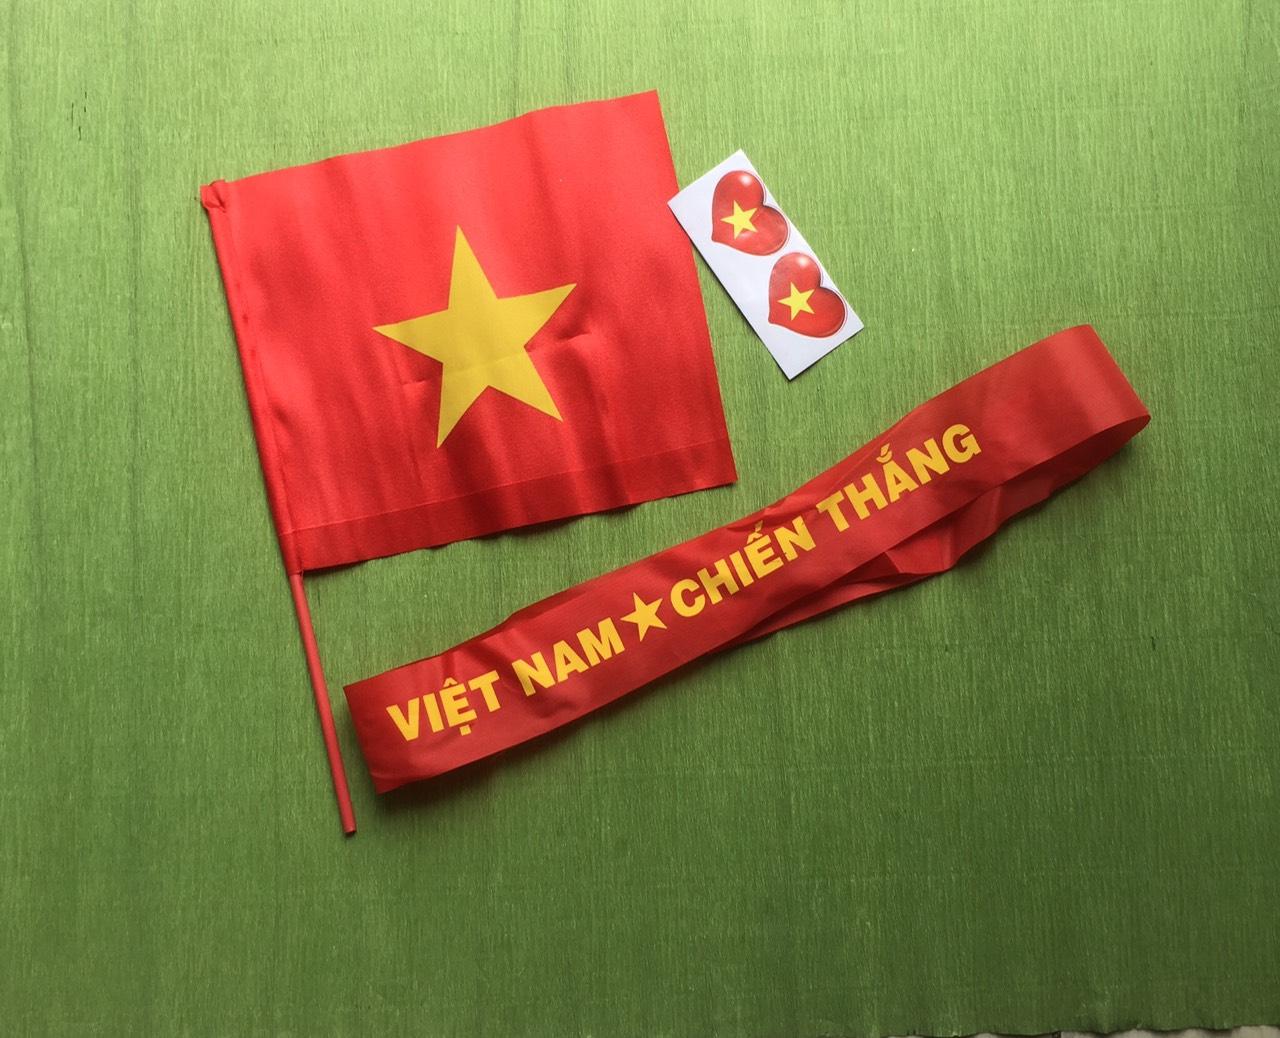 Băng rôn cỗ vũ - một dòng đời yêu nước tăng lên đến đỉnh điểm. Có nghĩa là sự ủng hộ mạnh mẽ nhất cho đội tuyển bóng đá của Việt Nam, và đồng thời thể hiện lòng tự hào chưa từng có. Một chiếc băng rôn tuy nhỏ nhắn, nhưng lại chứa đựng cả niềm tin và tình yêu lớn lao đến vô tận.